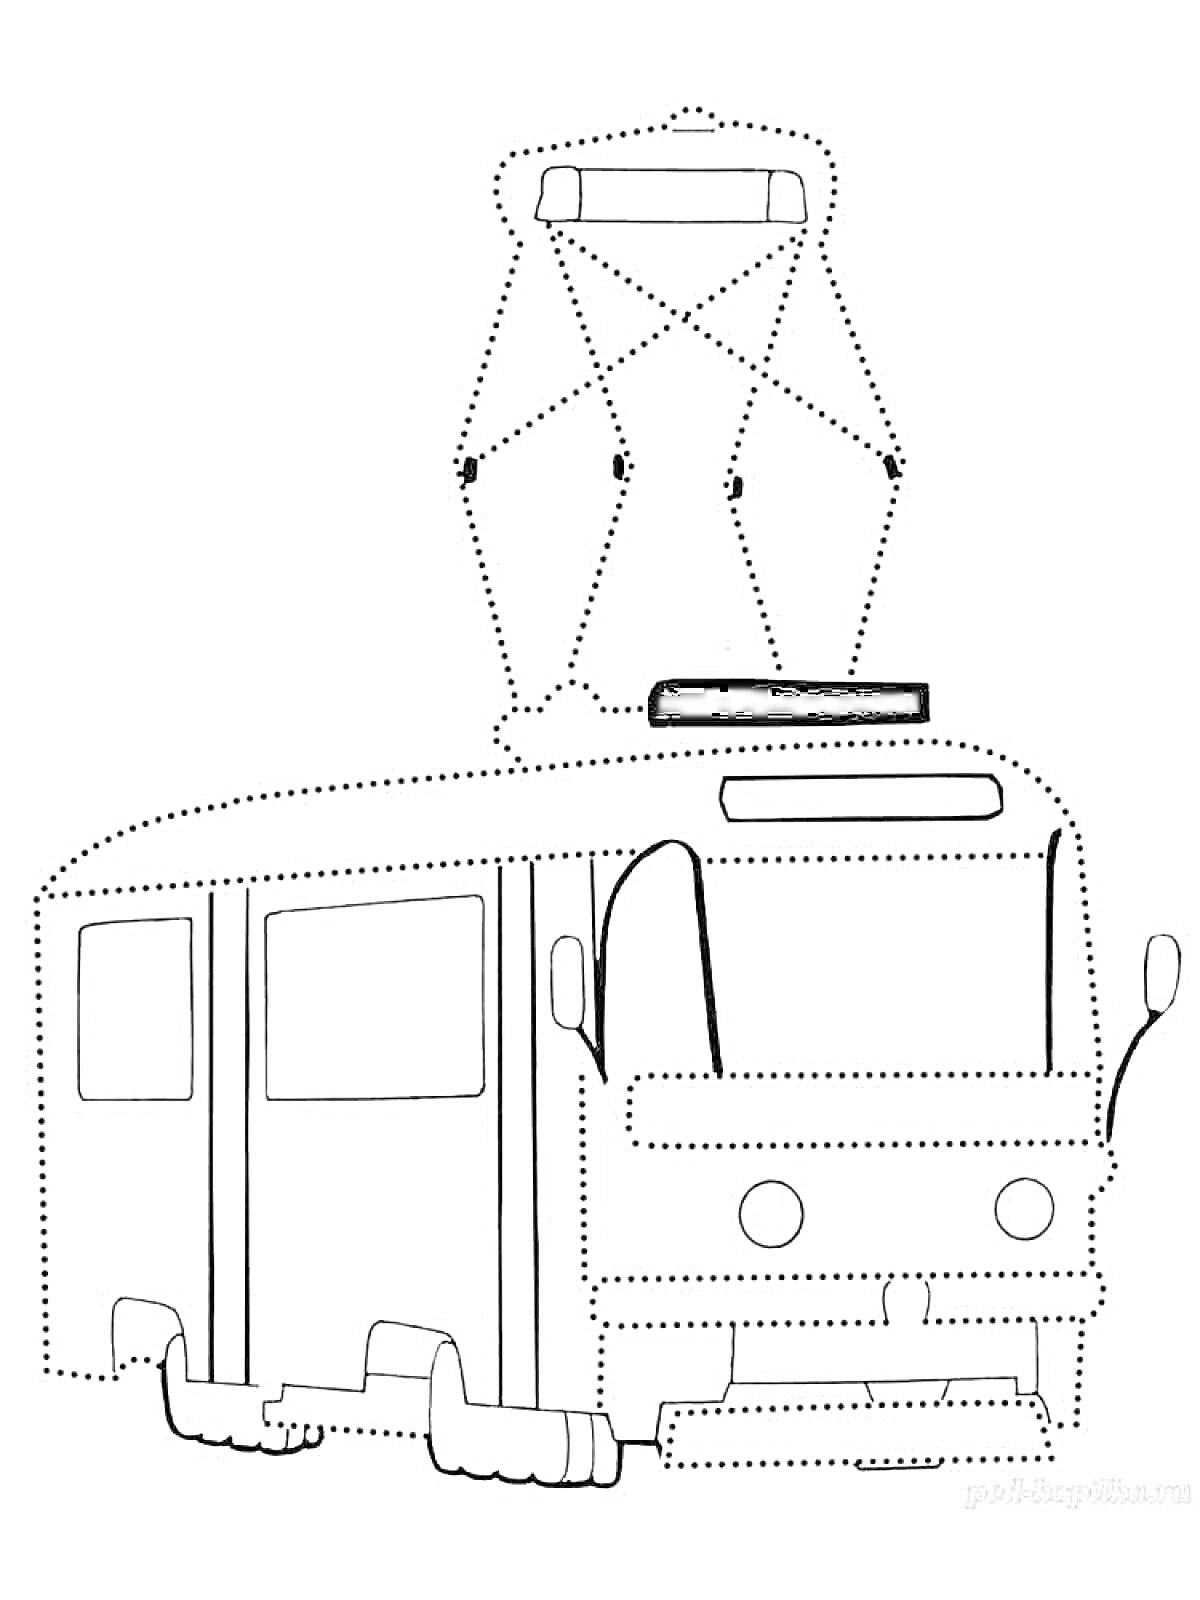 Раскраска Трамвай с двумя дверями и пантографом